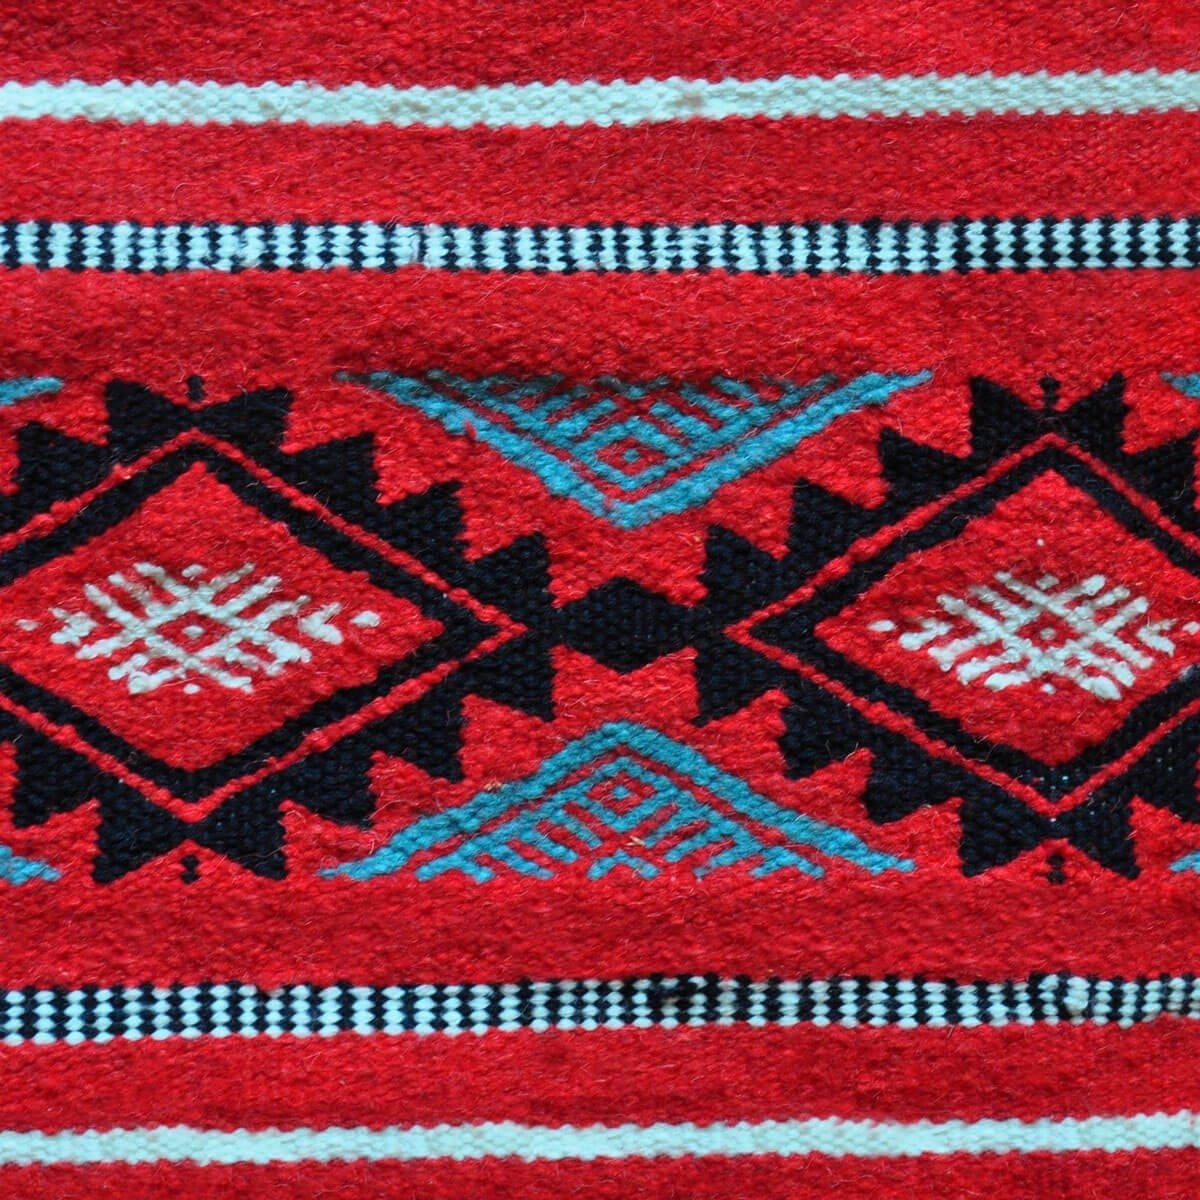 Tapete berbere Tapete Kilim Soumoud 137x240 Vermelho/Amarelo/Azul (Tecidos à mão, Lã) Tapete tunisiano kilim, estilo marroquino.